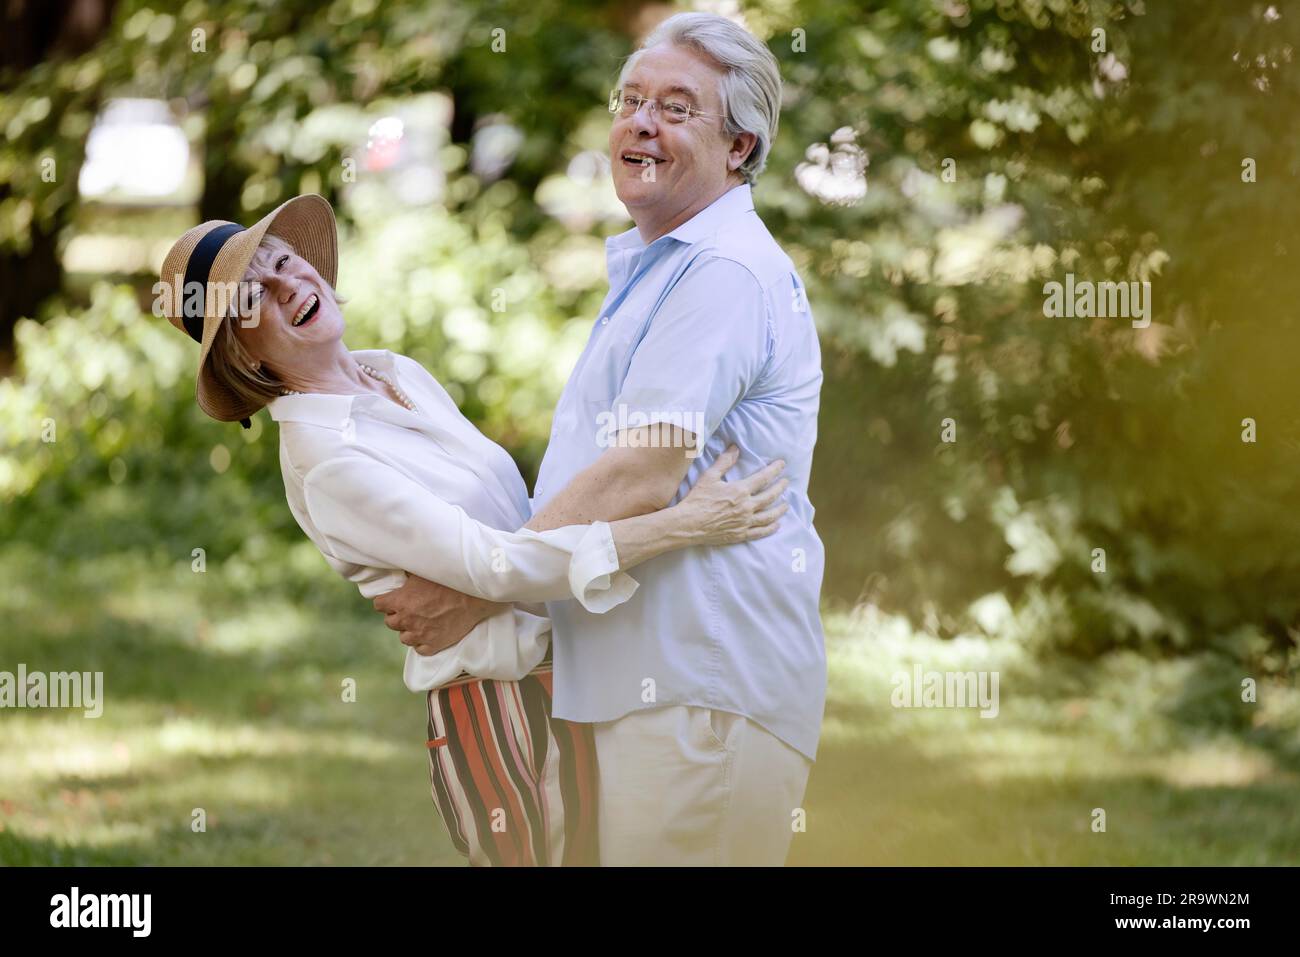 Deutschland, ein älteres Paar, das für den Sommer gekleidet ist, sich umarmt und Spaß in der Natur hat Stockfoto